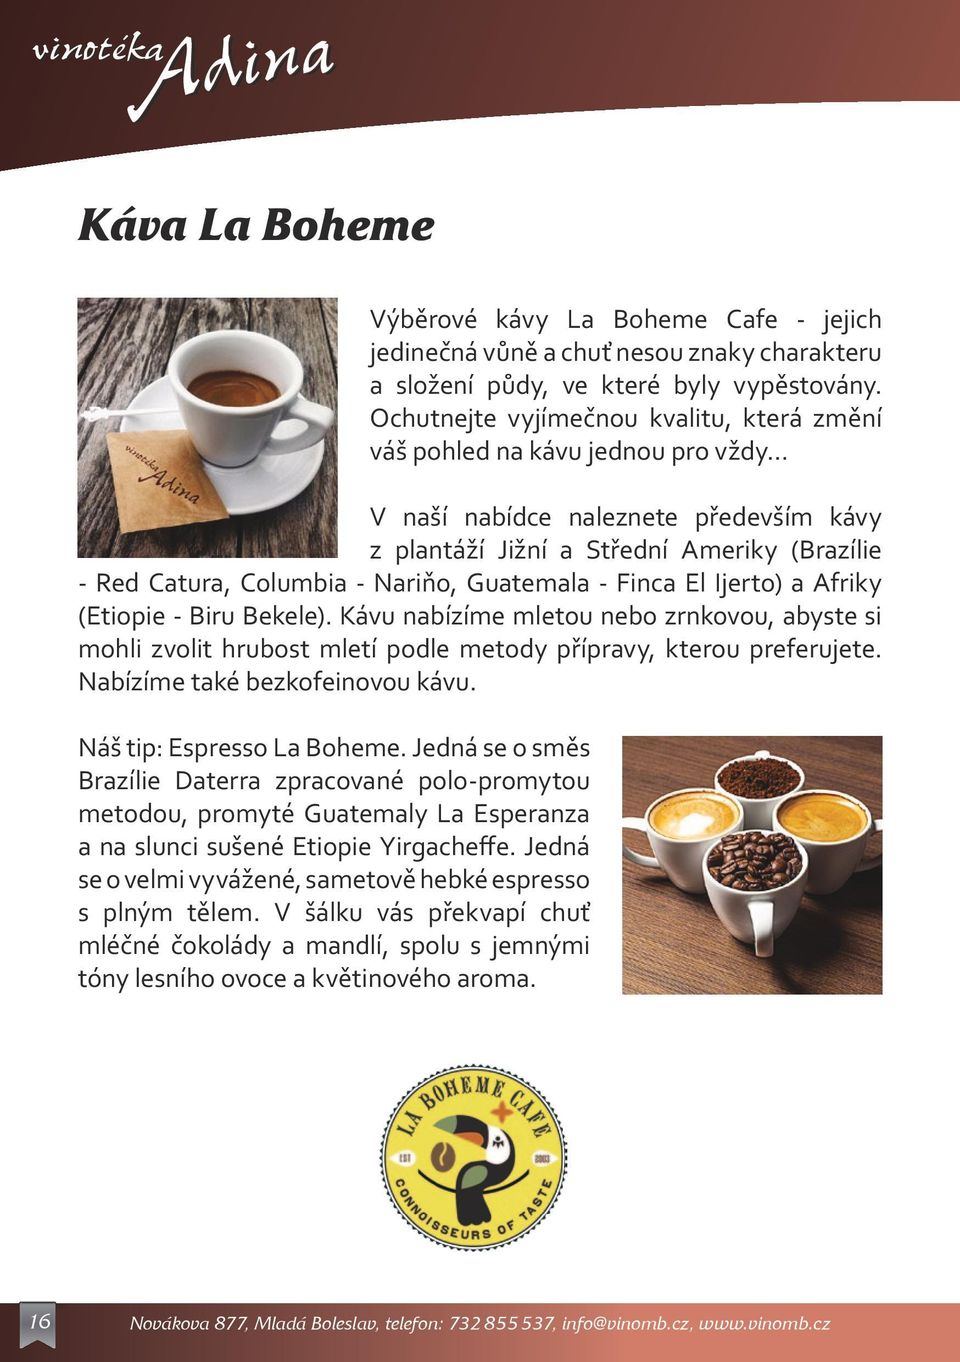 Guatemala - Finca El Ijerto) a Afriky (Etiopie - Biru Bekele). Kávu nabízíme mletou nebo zrnkovou, abyste si mohli zvolit hrubost mletí podle metody přípravy, kterou preferujete.